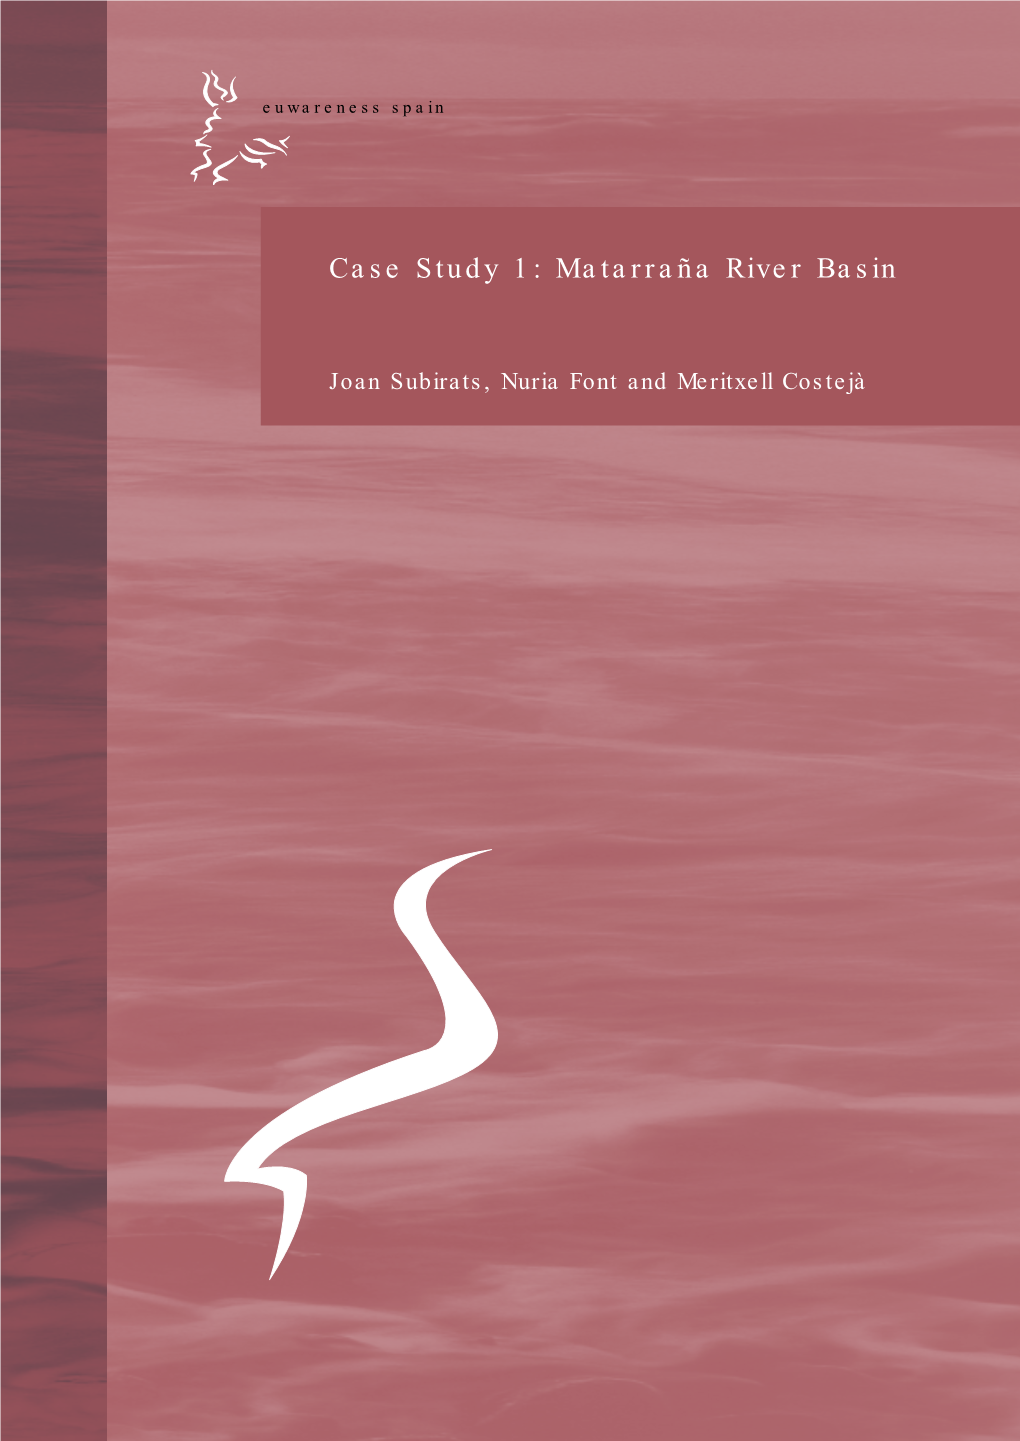 Case Study 1: Matarraña River Basin